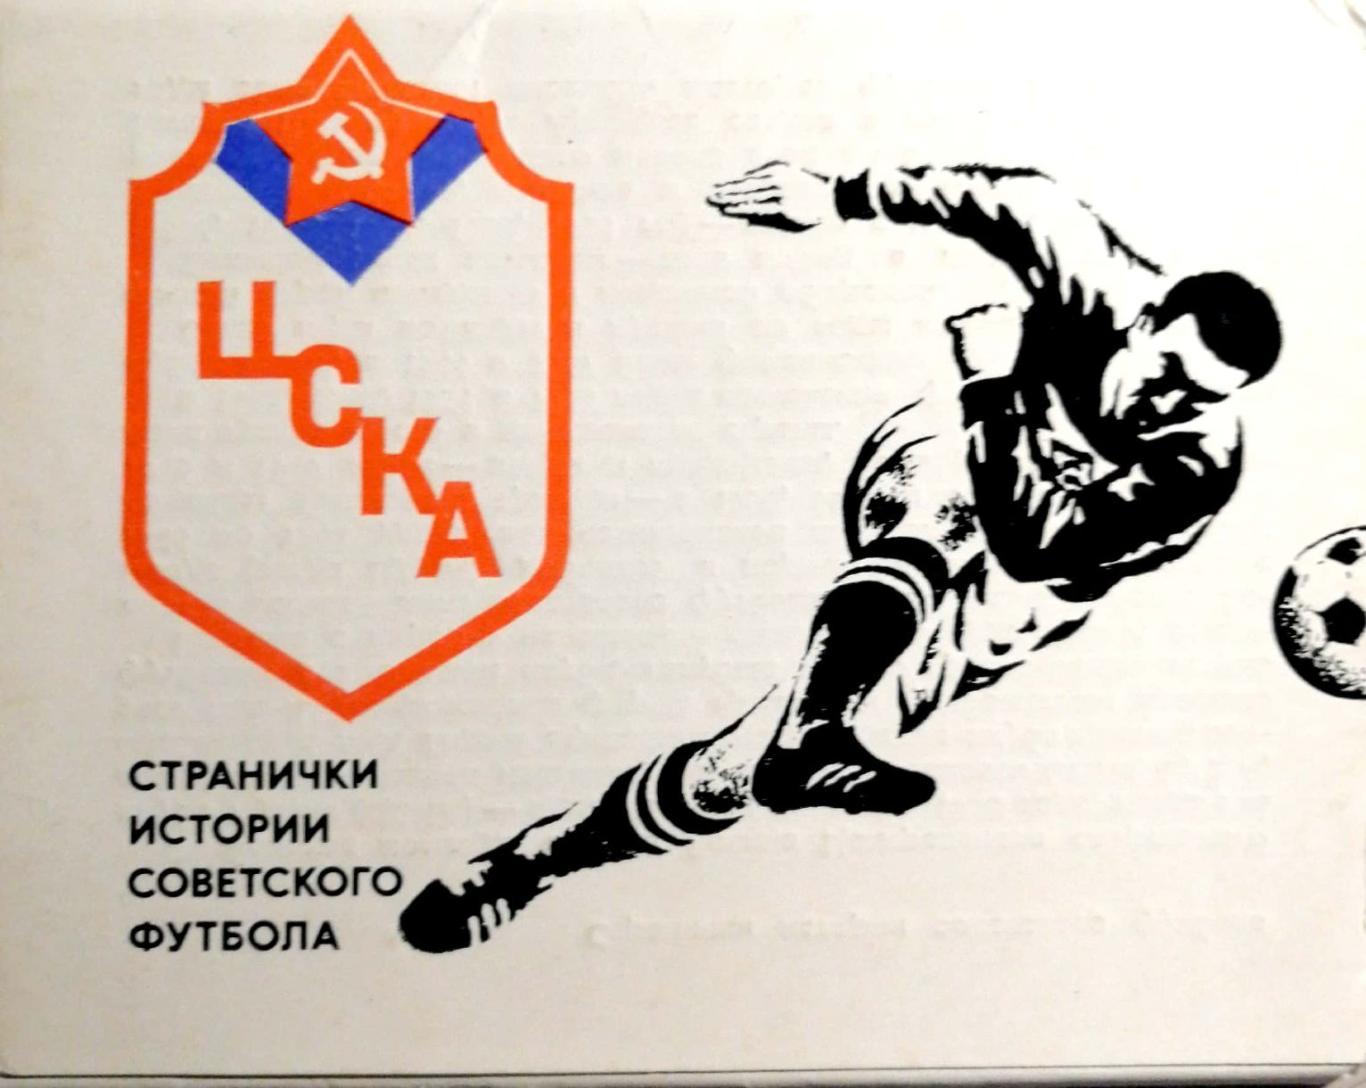 Странички истории советского футбола. ЦСКА Москва, Планета, 1978